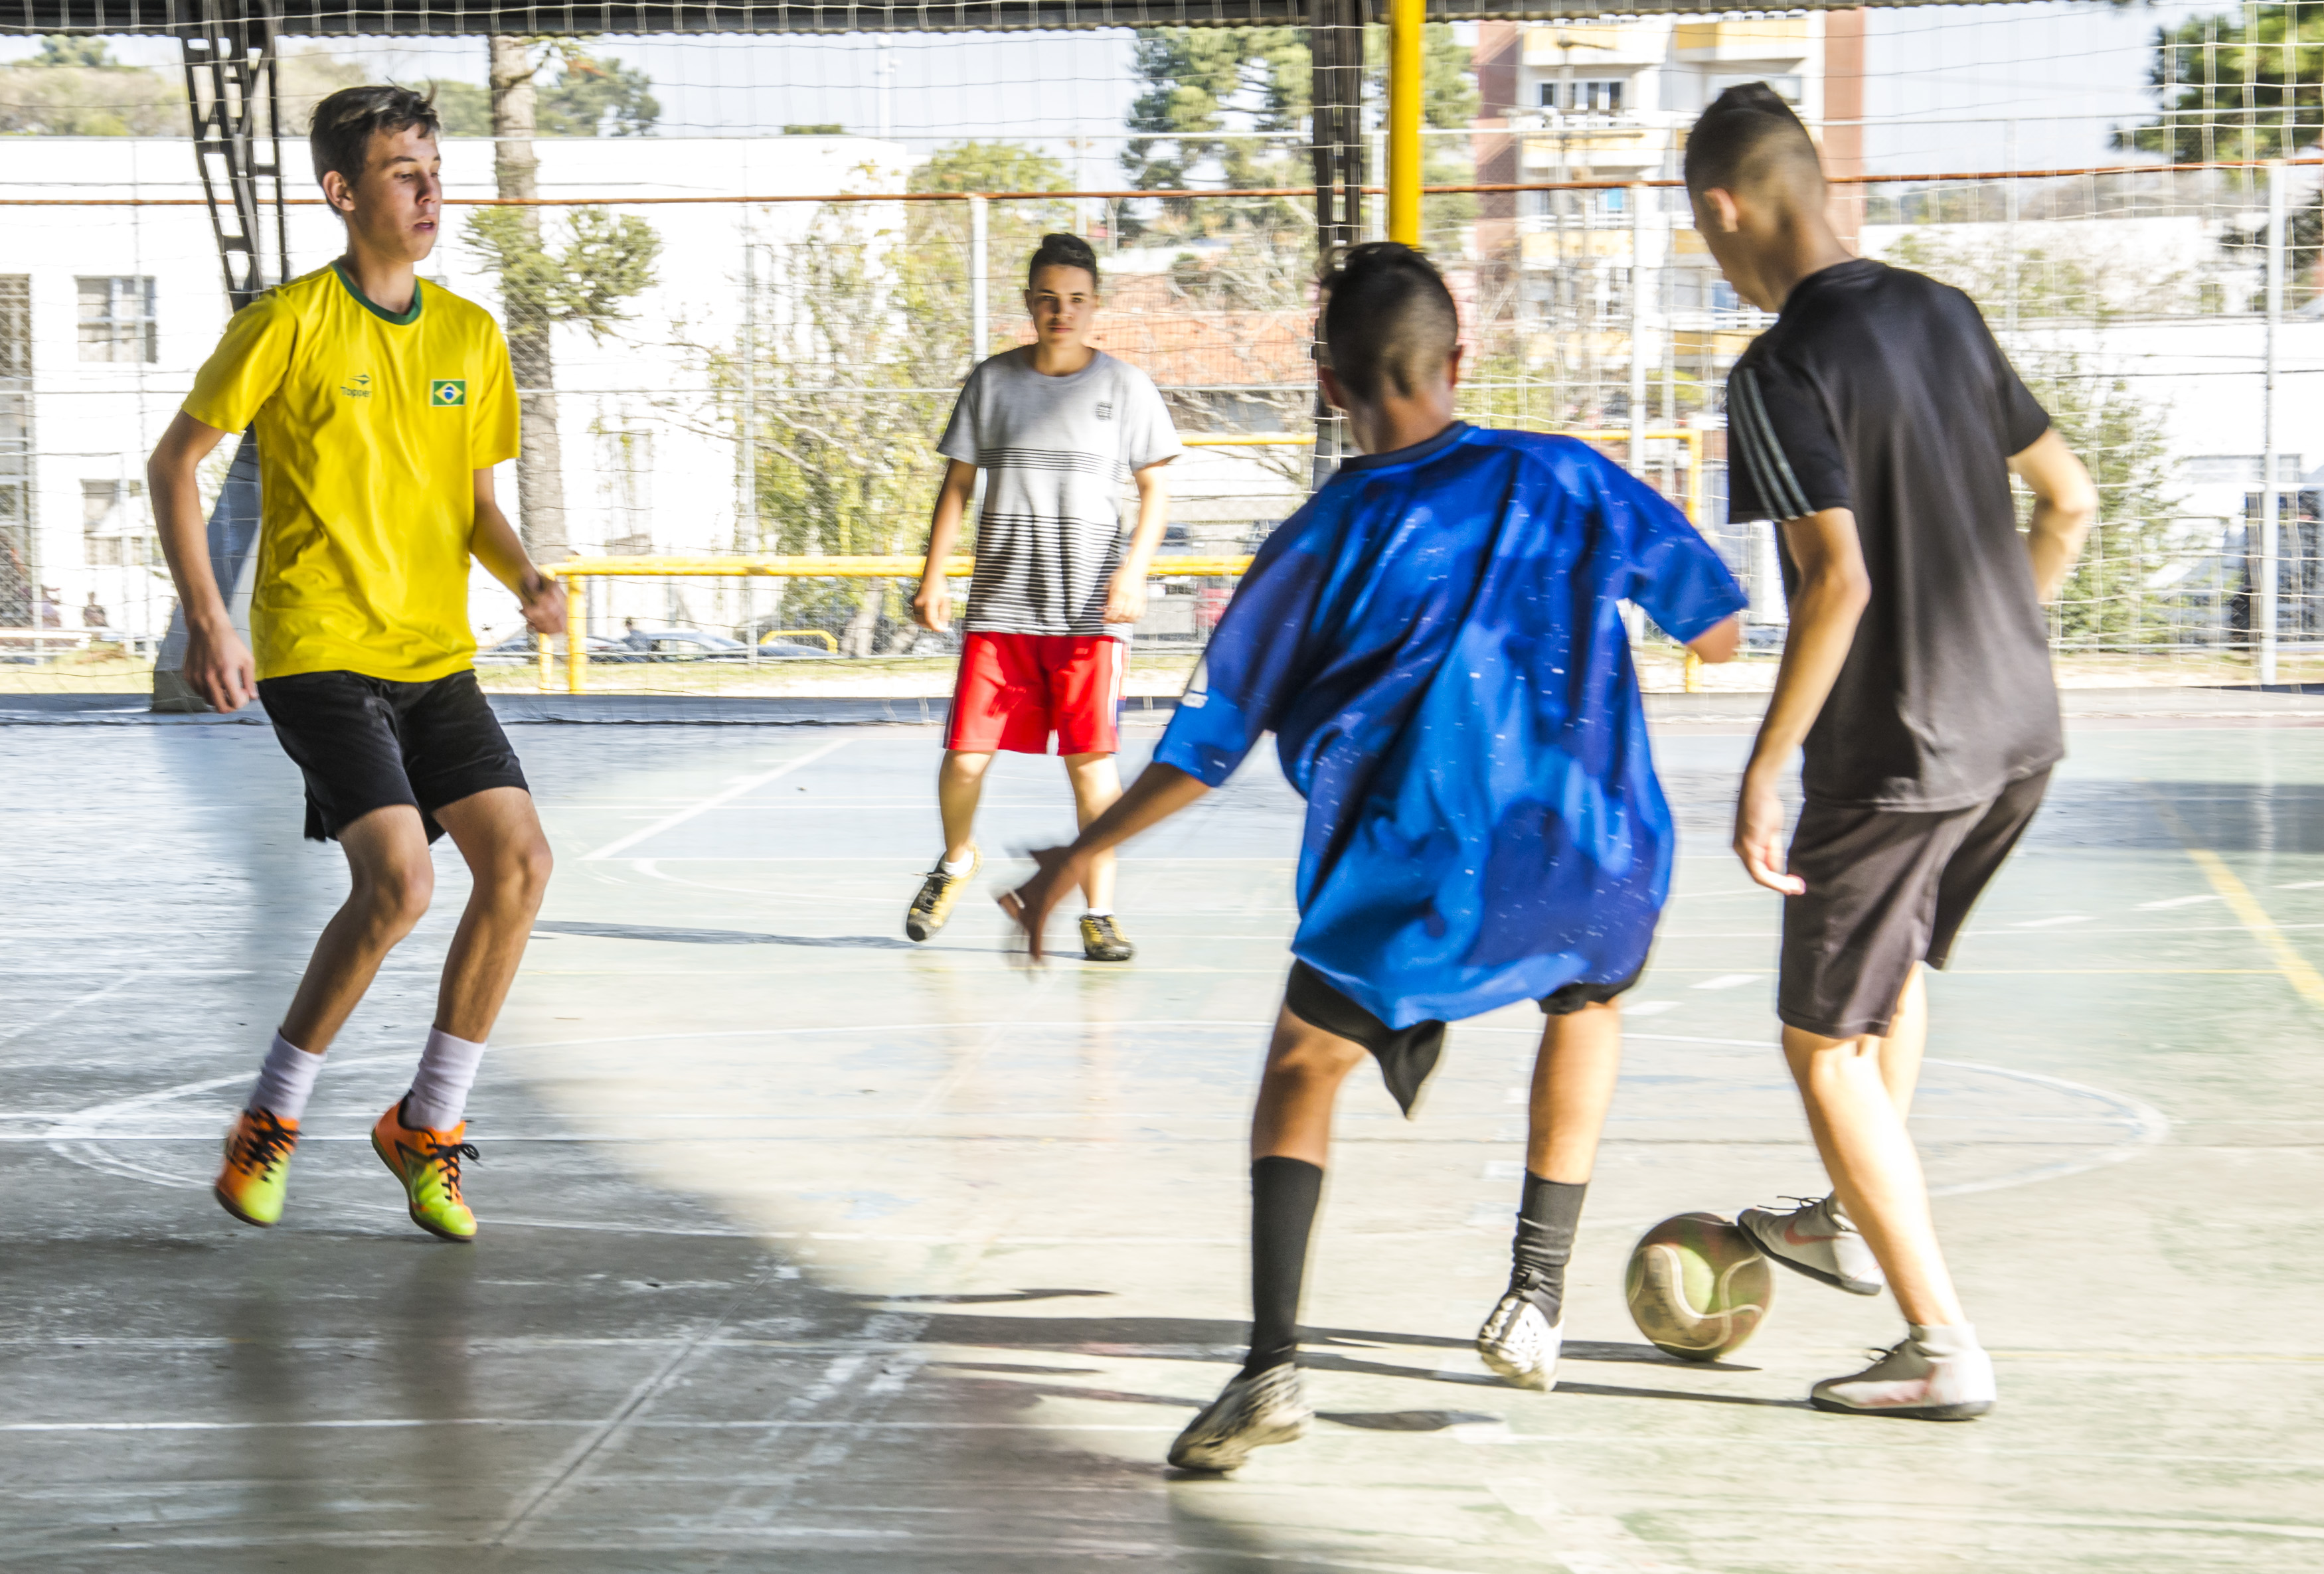 O futebol de rua como prática de cidadania - Outras Palavras